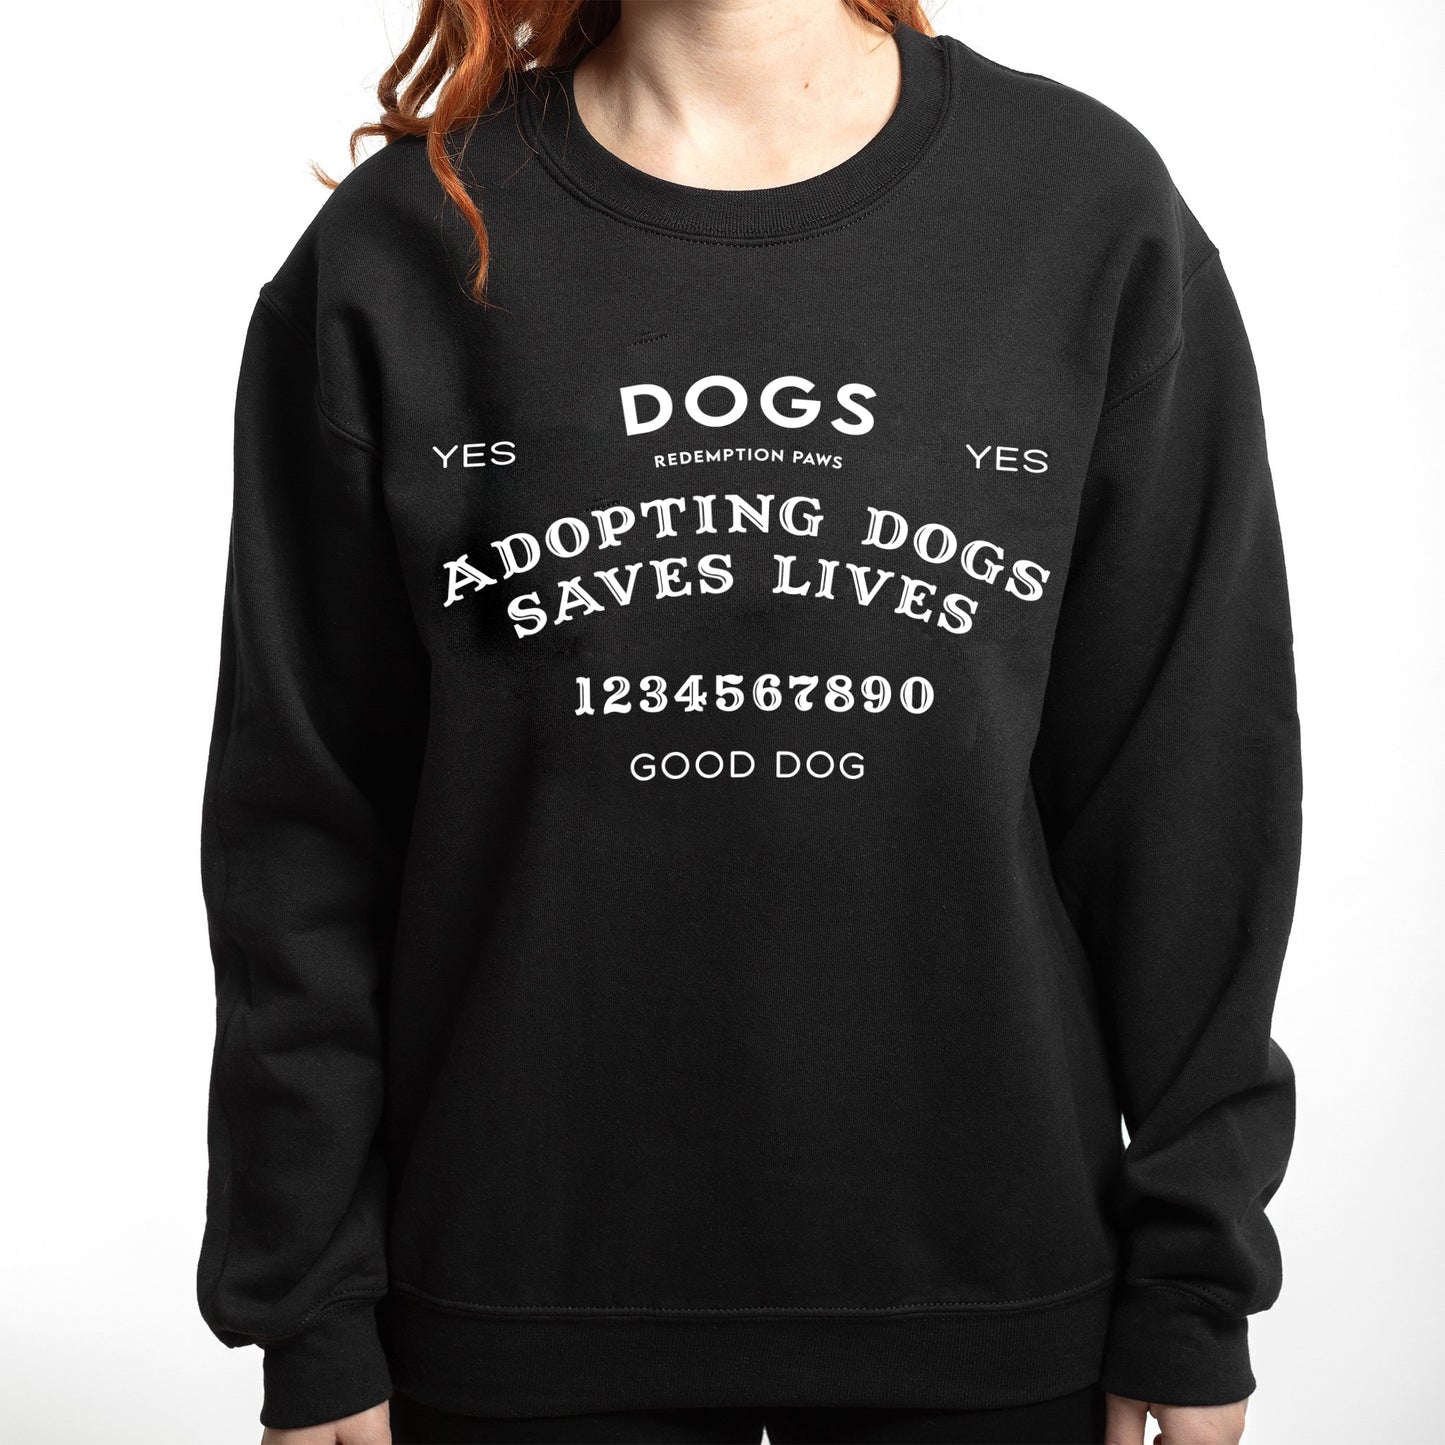 Adopting Dogs Saves Lives Ouija Sweatshirt